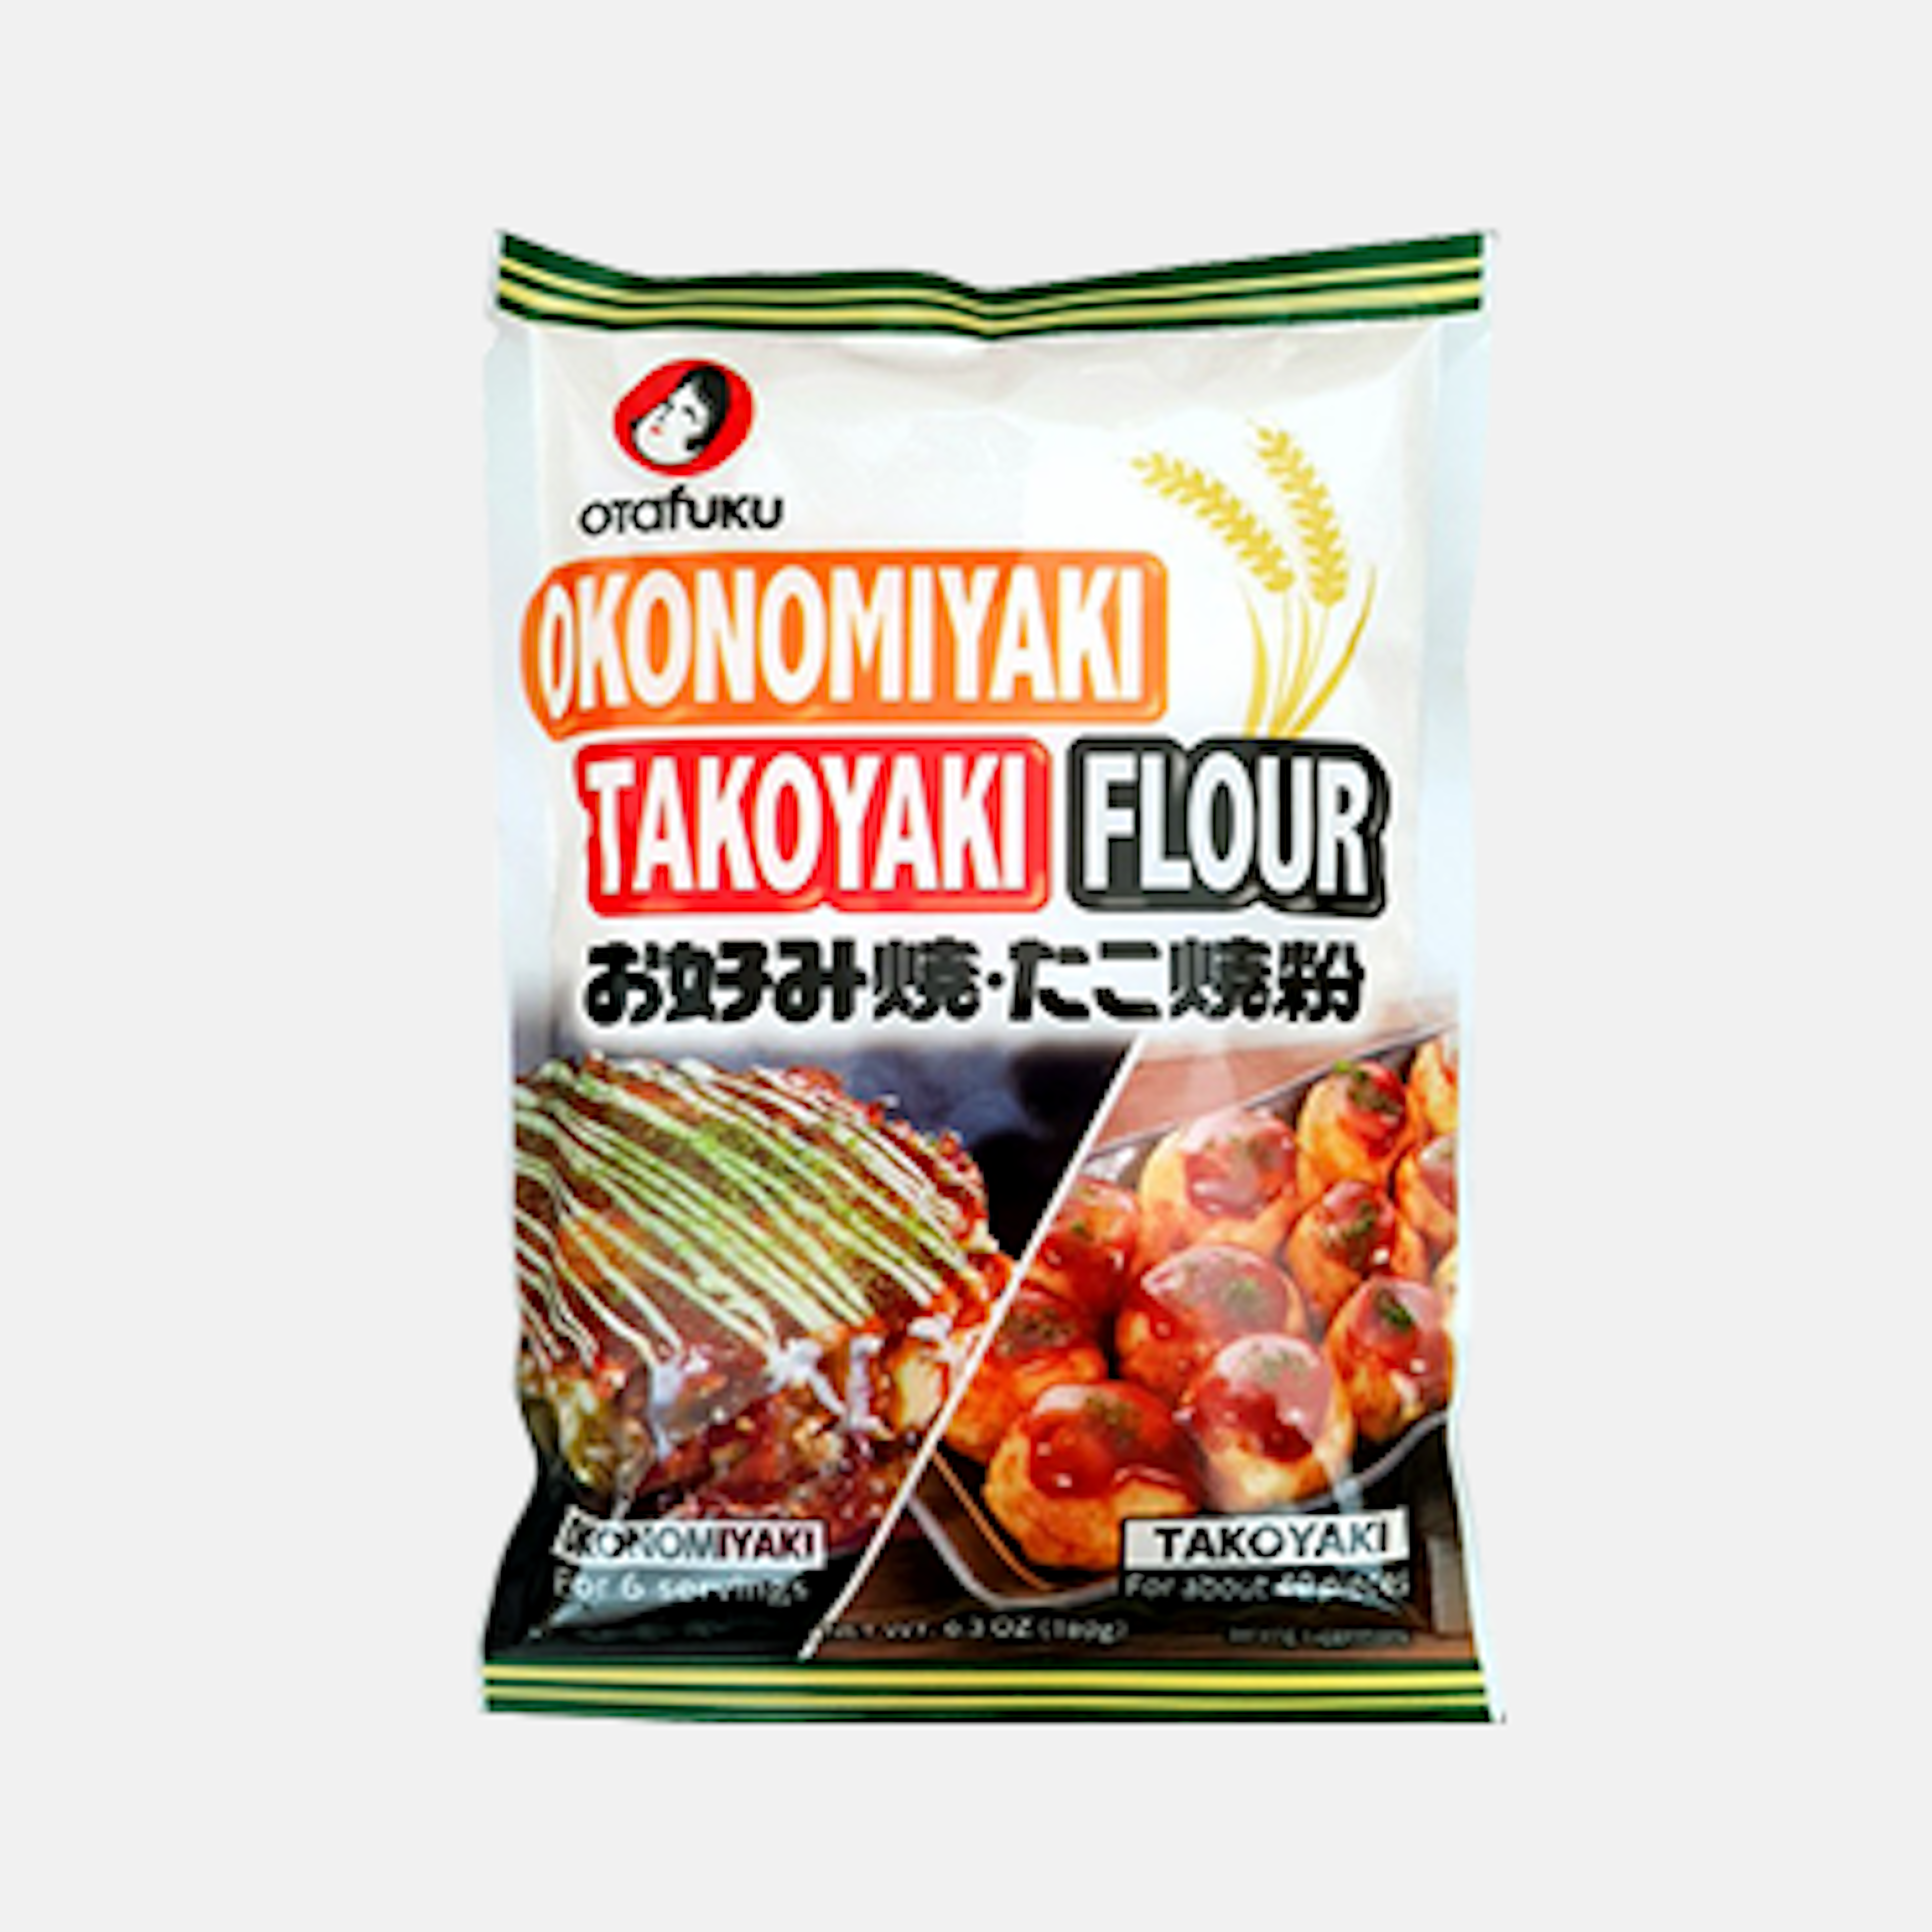 Otafuku Okonomiyaki Takoyaki Flour Mix 180g - The authentic taste of Japan